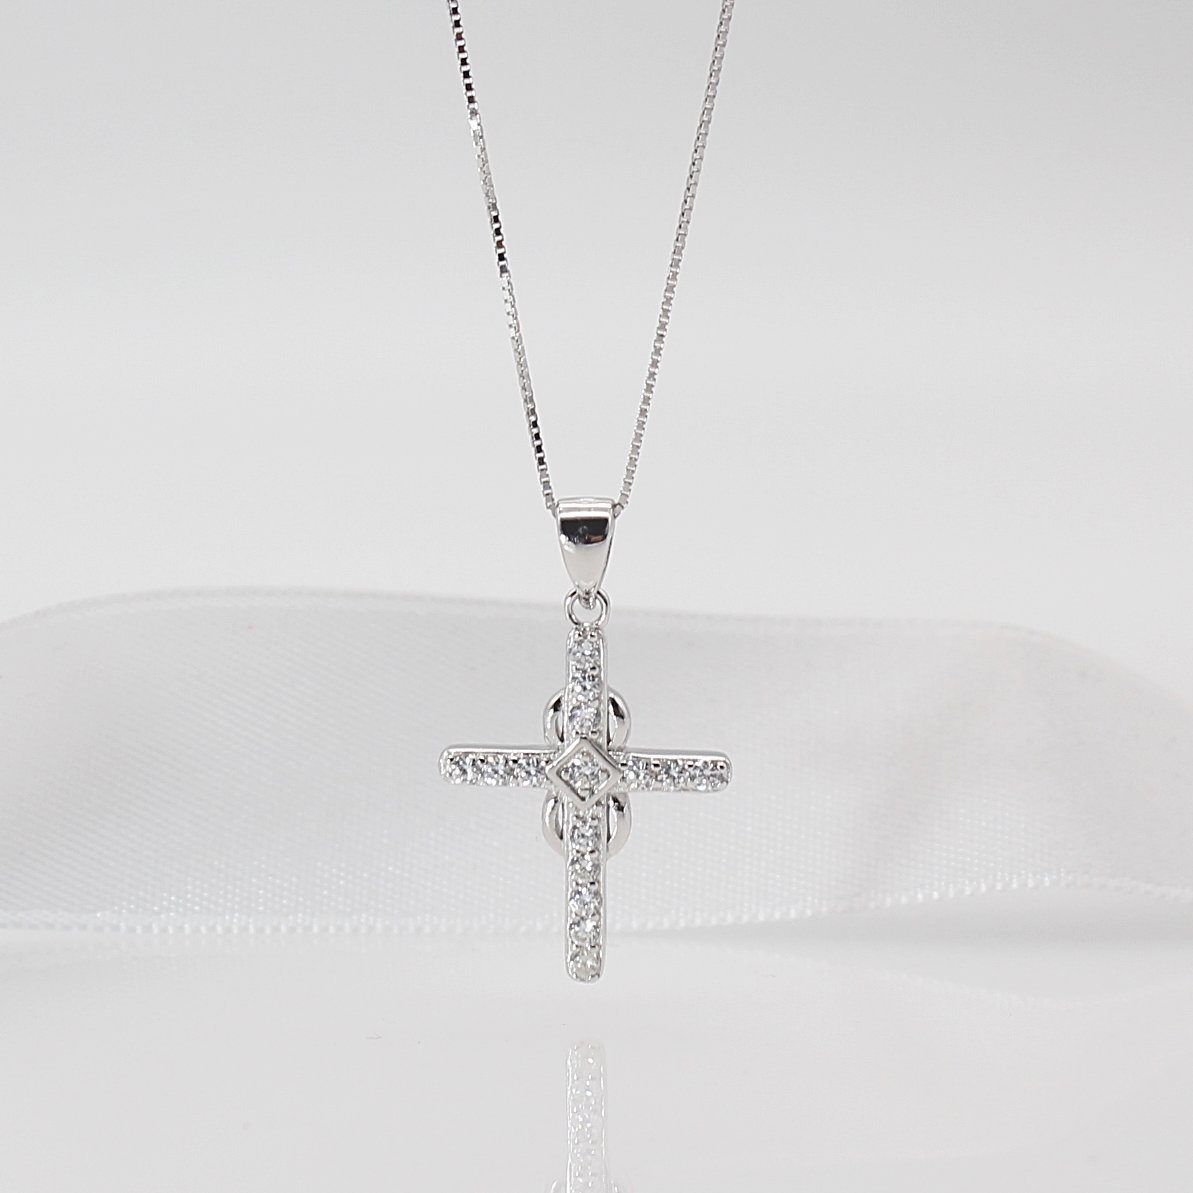 ELLAWIL Kreuzkette Damen Halskette mit Kreuzanhänger Kreuz Silberkette Kreuzkette (Sterling Silber 925, Kettenlänge 40 cm), inklusive Geschenkschachtel